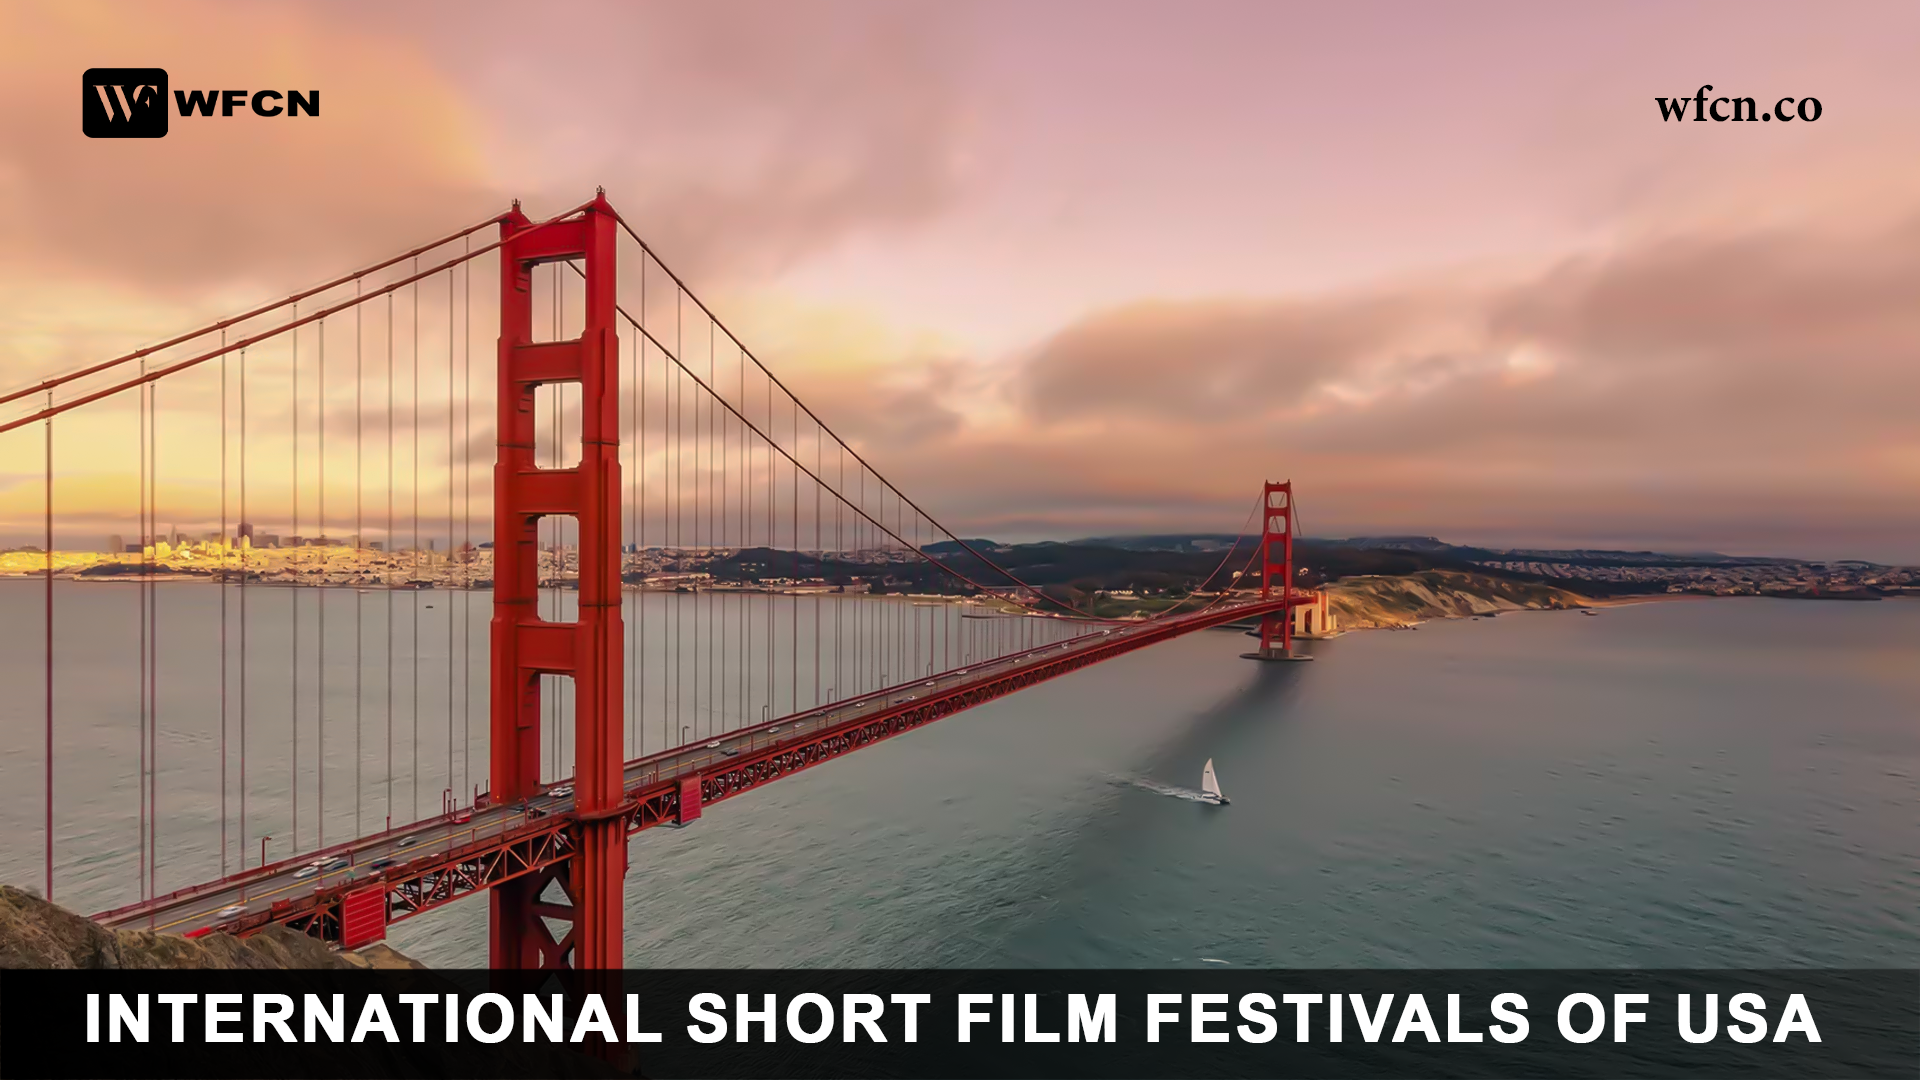 International Short Film Festivals of USA